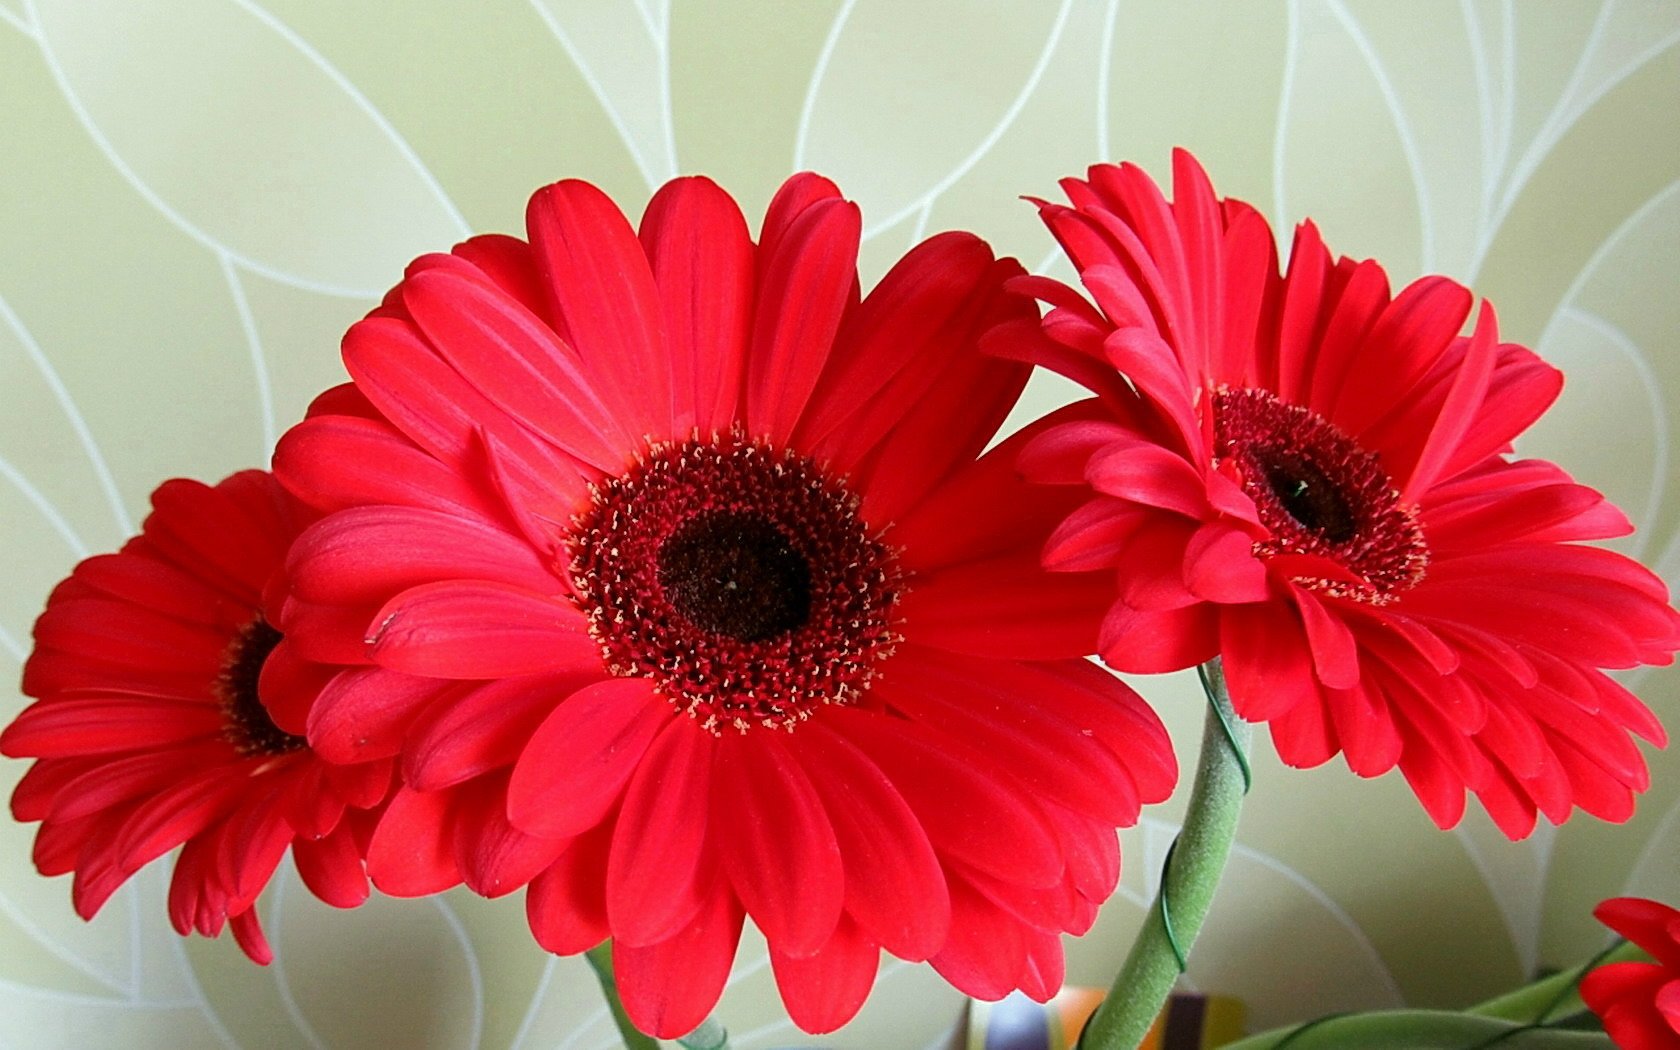 Bạn thích màu đỏ rực rỡ, và muốn một bông hoa đẹp để trang trí nhà của mình? Hoa đồng tiền đỏ là lựa chọn hoàn hảo cho bạn! Hãy ngắm nhìn qua những hình ảnh đầy sắc màu và độc đáo này để tìm kiếm sự cảm hứng!